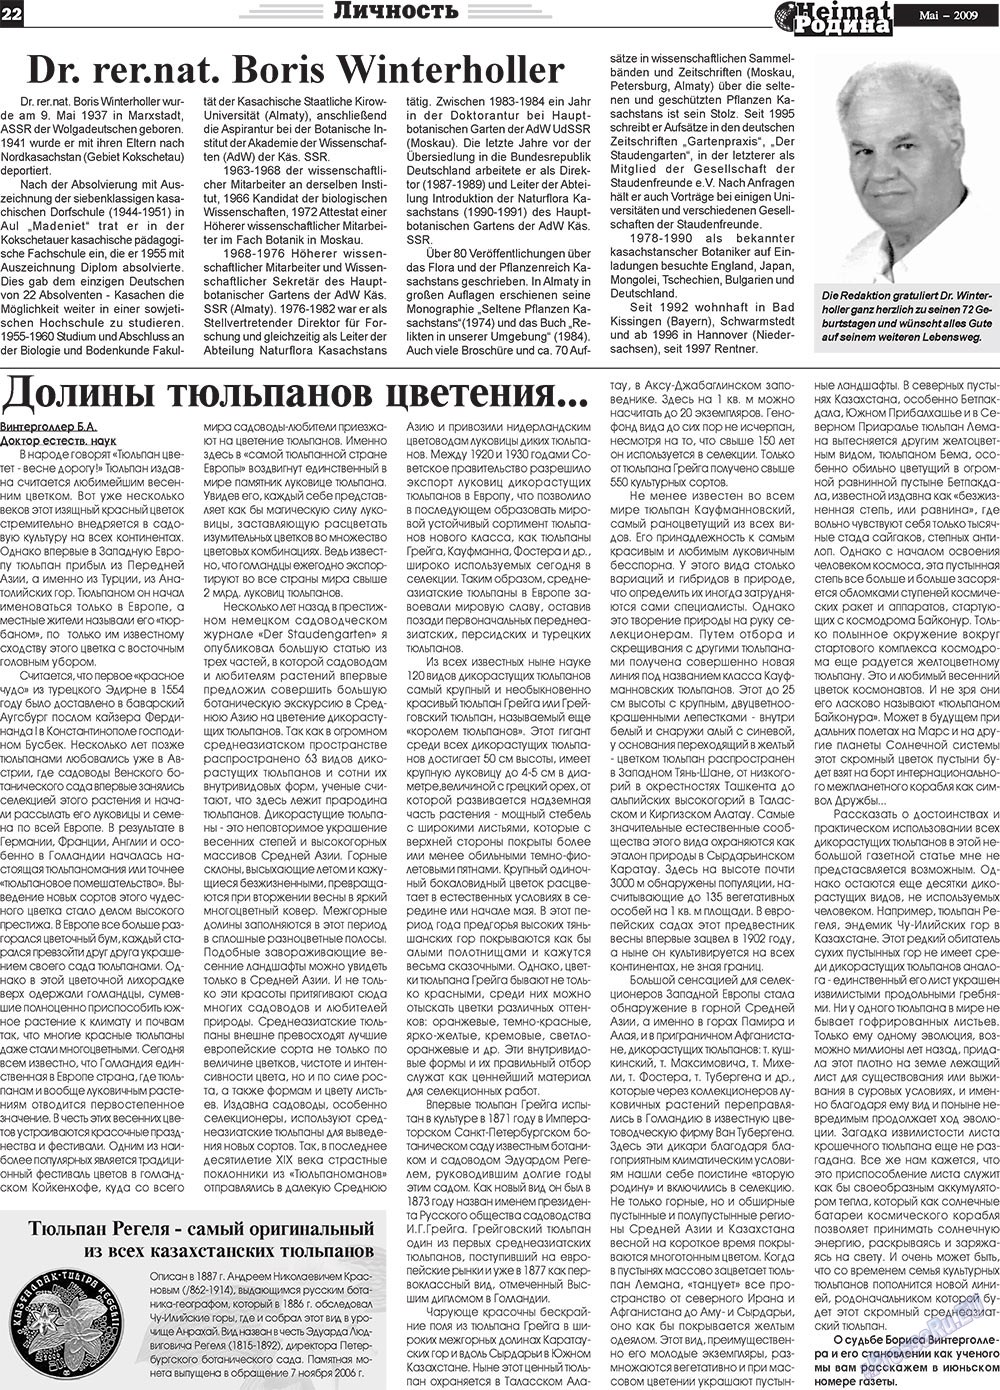 Heimat-Родина (газета). 2009 год, номер 5, стр. 22